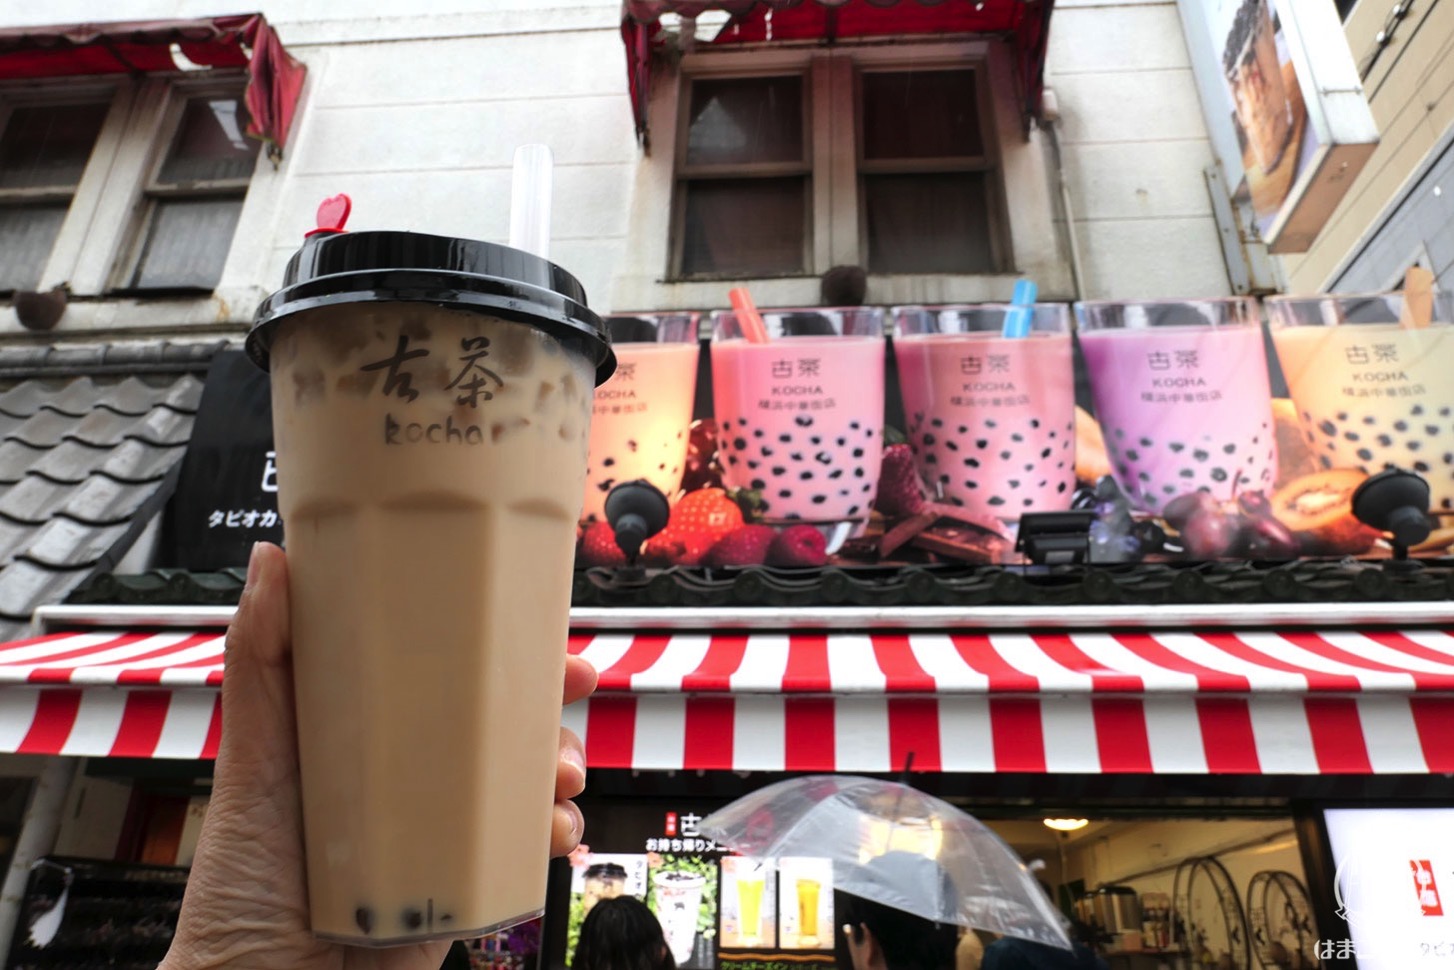 横浜中華街 タピオカミルクティー専門店「古茶」は横浜関帝廟そば、ミルクティーは甘系